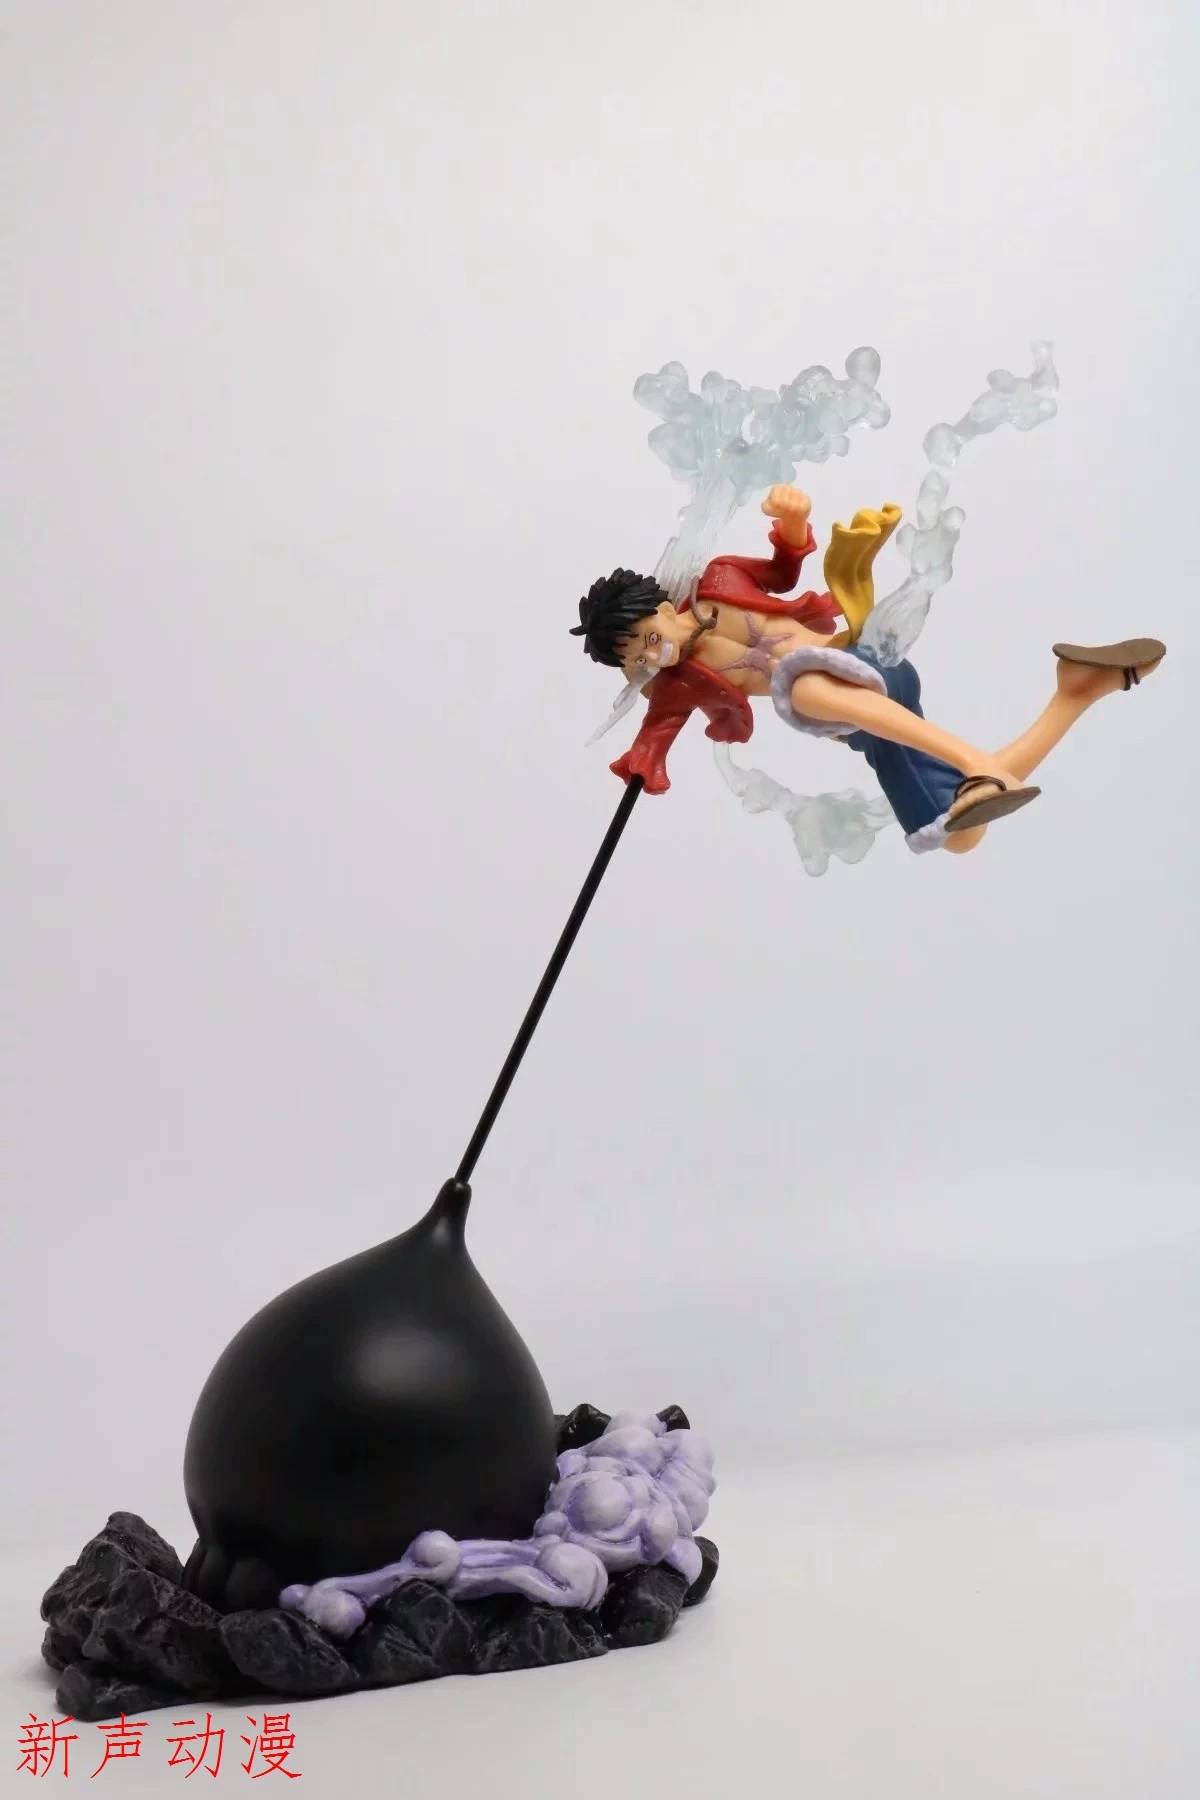 Anime Pirate Toy Straw Hat Fight Form Giant Luffy Bánh răng thứ ba - Khác